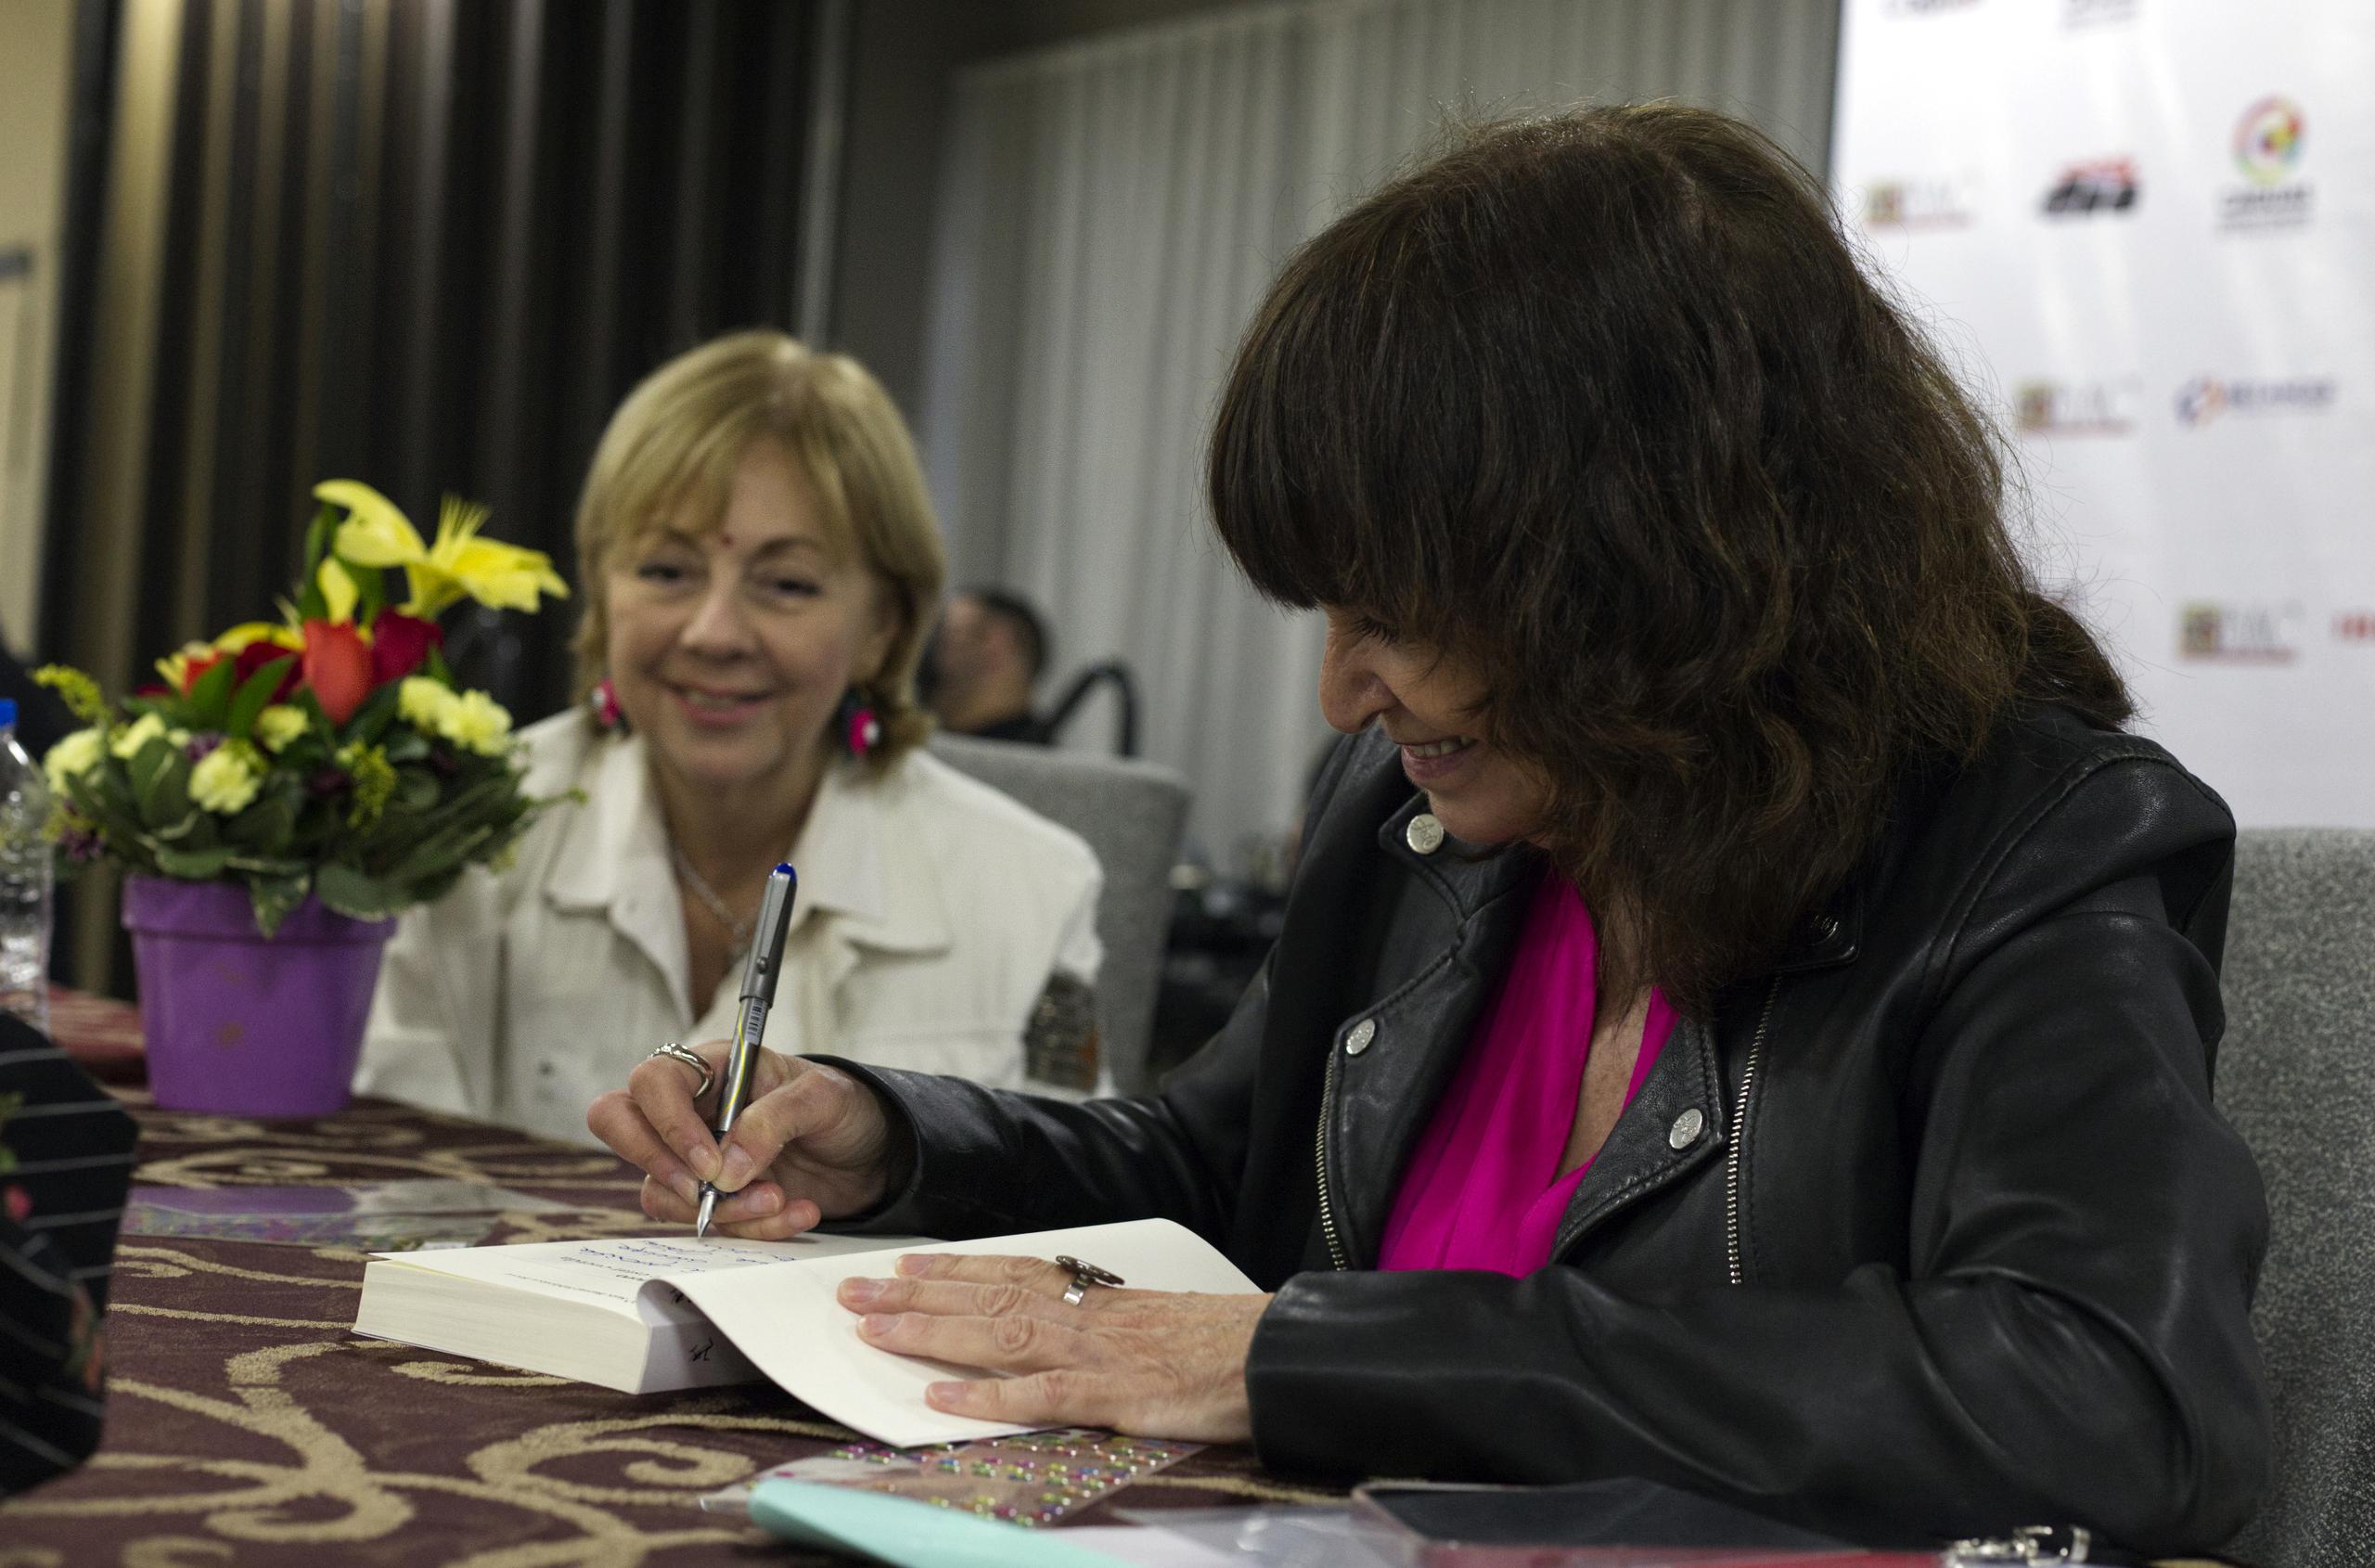 La escritora española Rosa Montero (derecha) y la puertorriqueña Mayra Montero (izquierda) autografían libros durante la inauguración del Primer Congreso Internacional de Escritores.